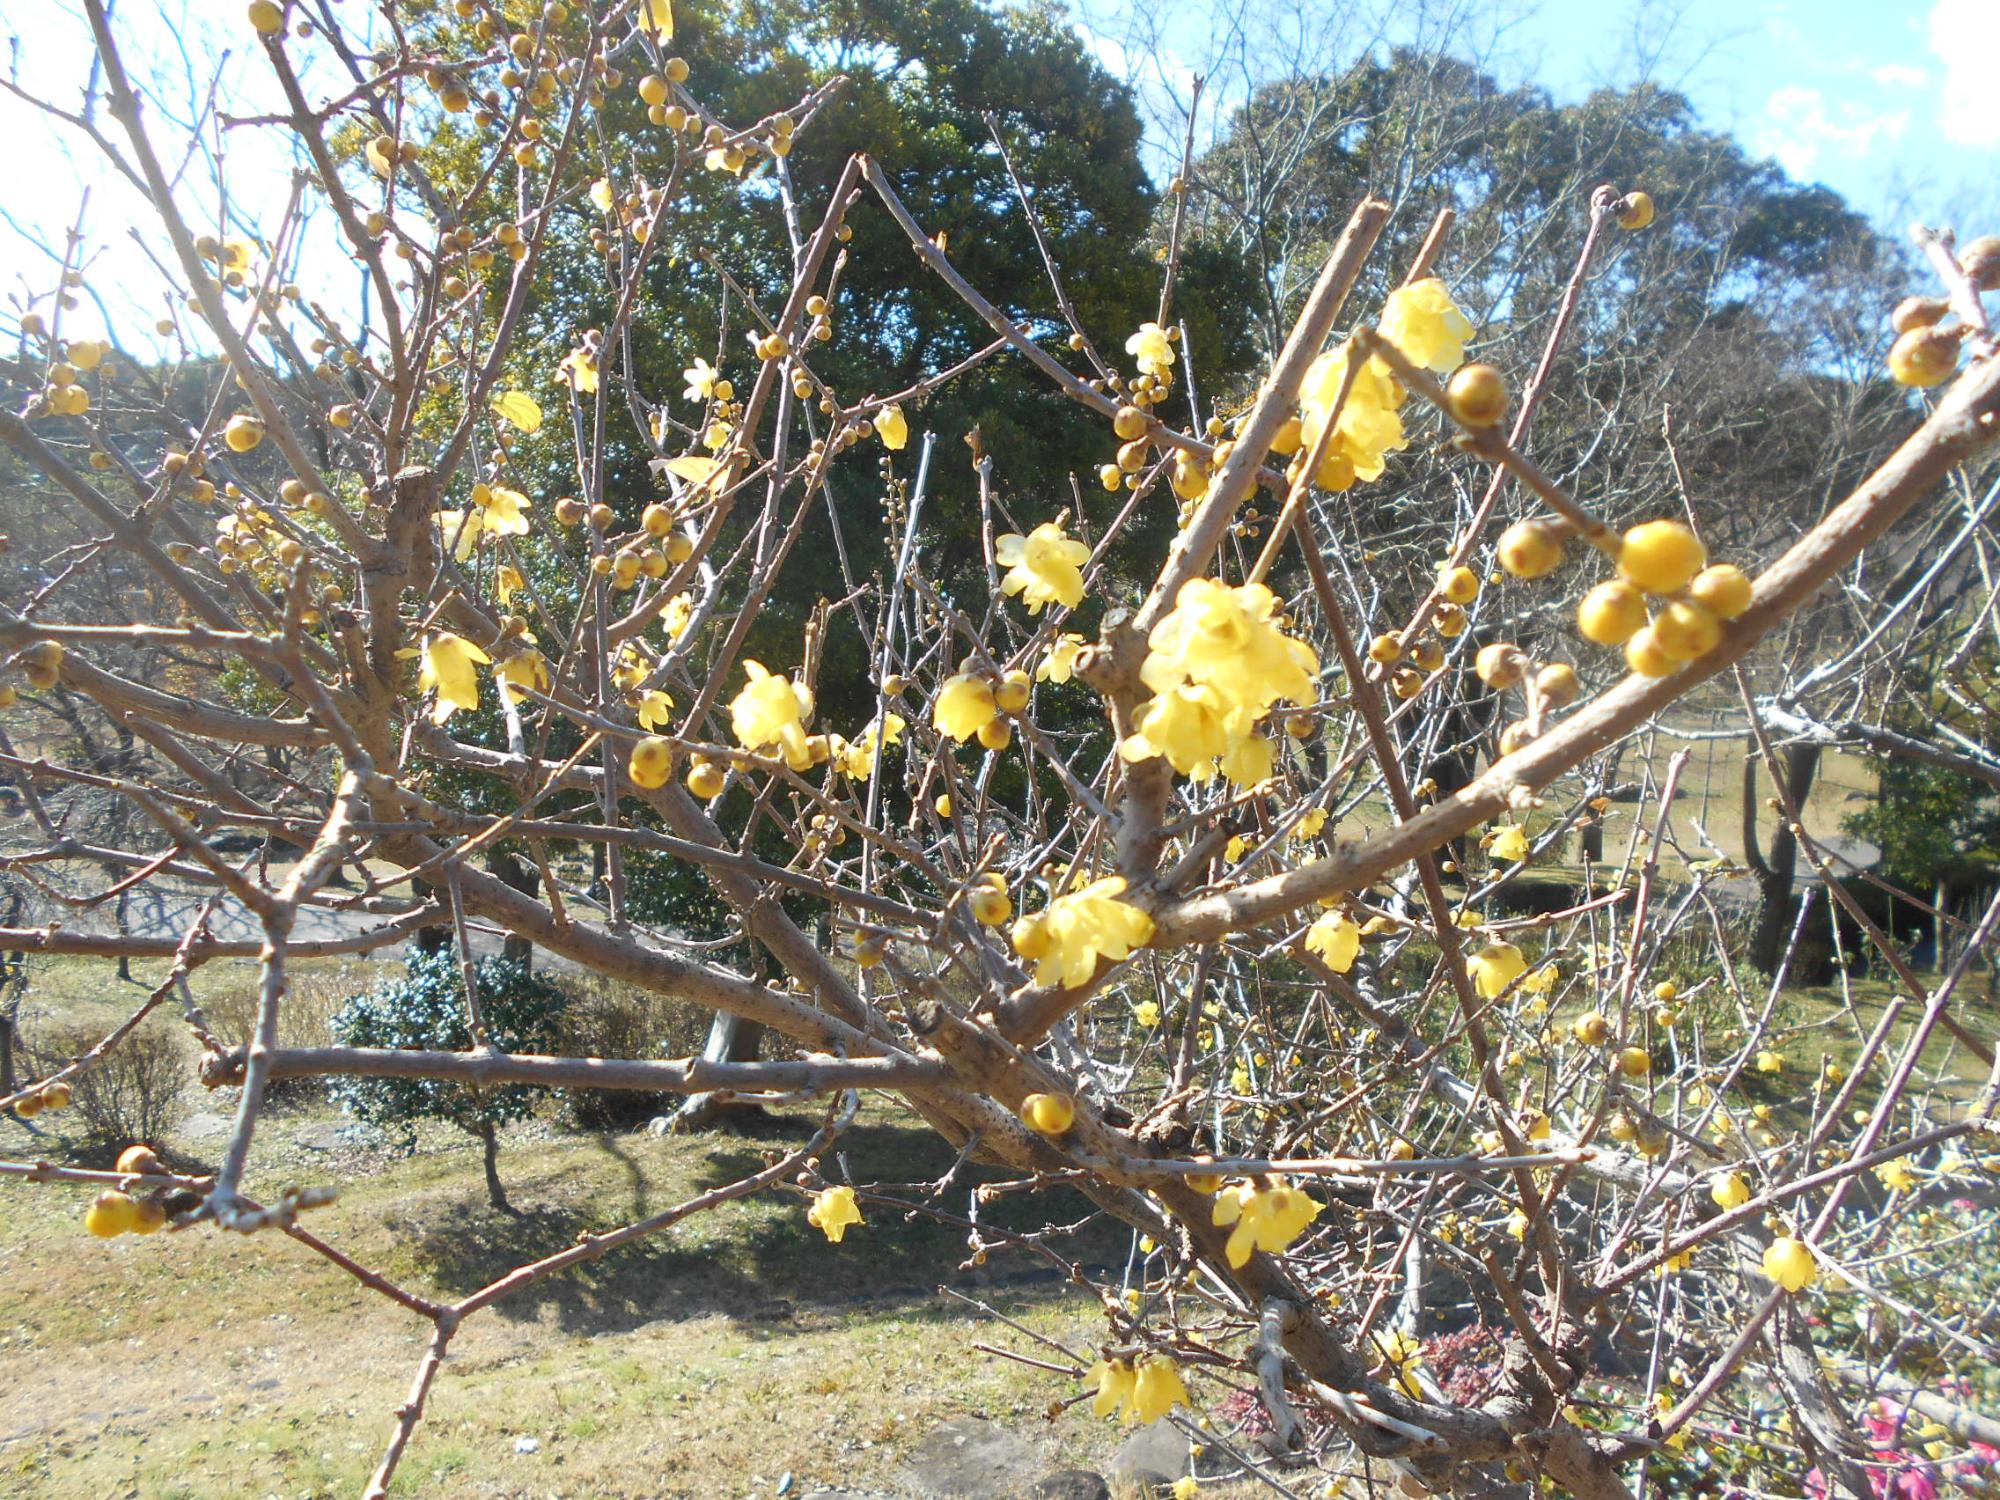 休憩小屋付近の沿道では、ロウバイの黄色い花がきれいです。甘い良い香りのする花です。